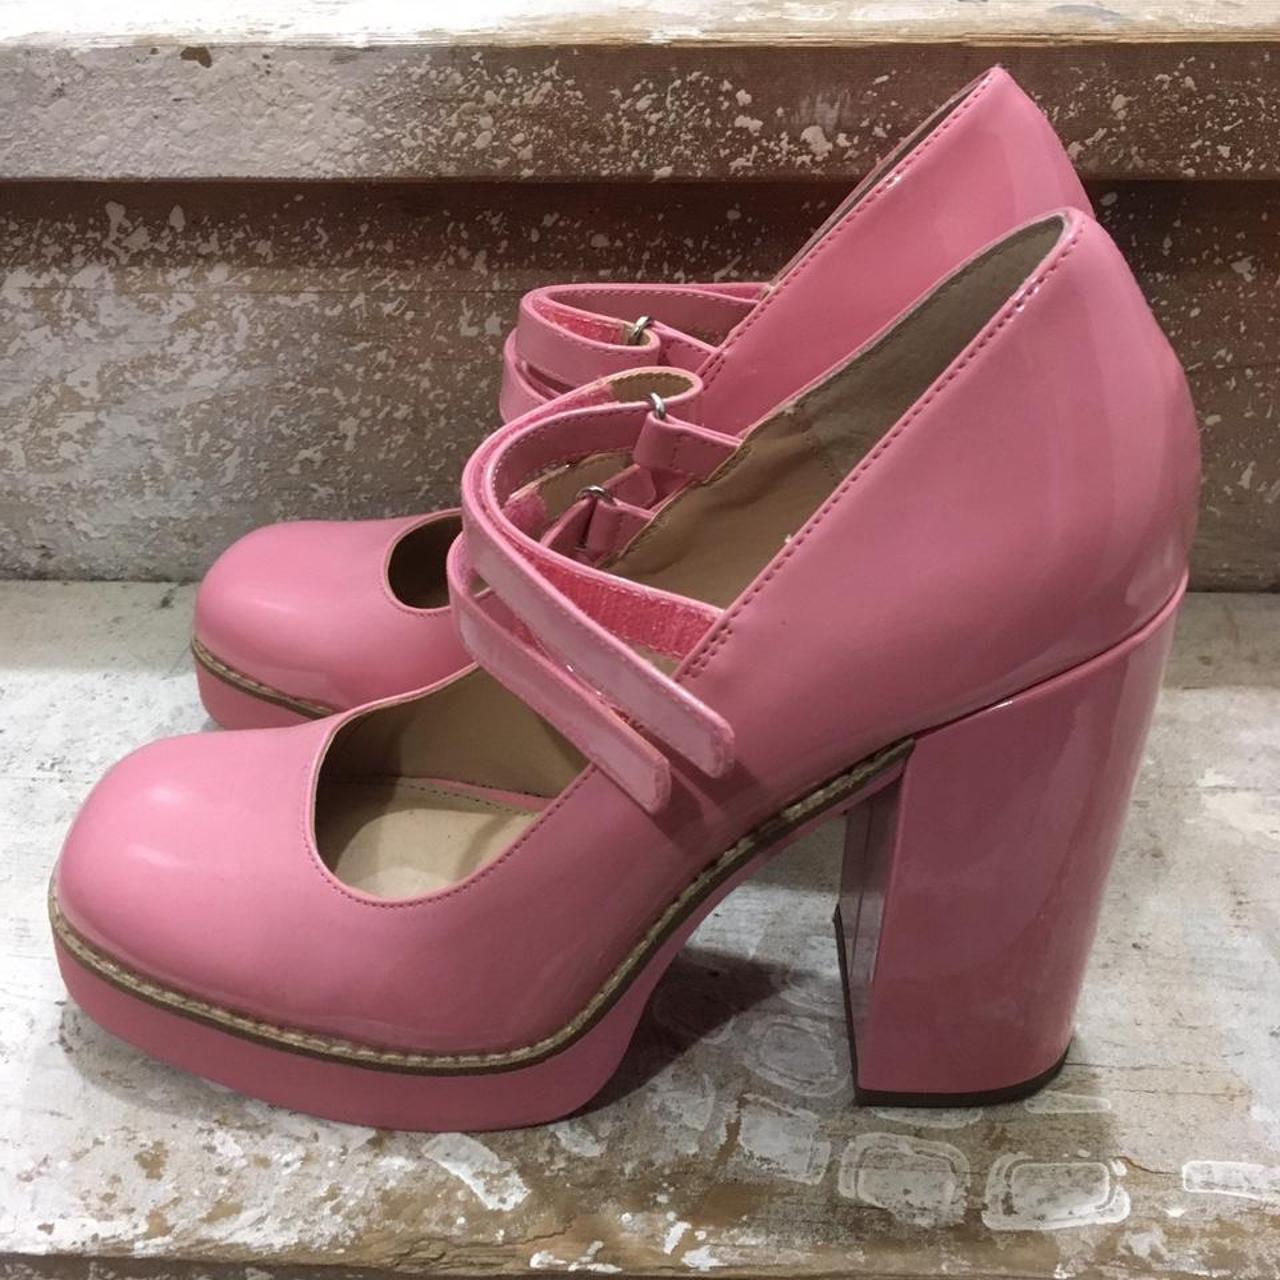 Steve Madden Women's Pink Footwear | Depop